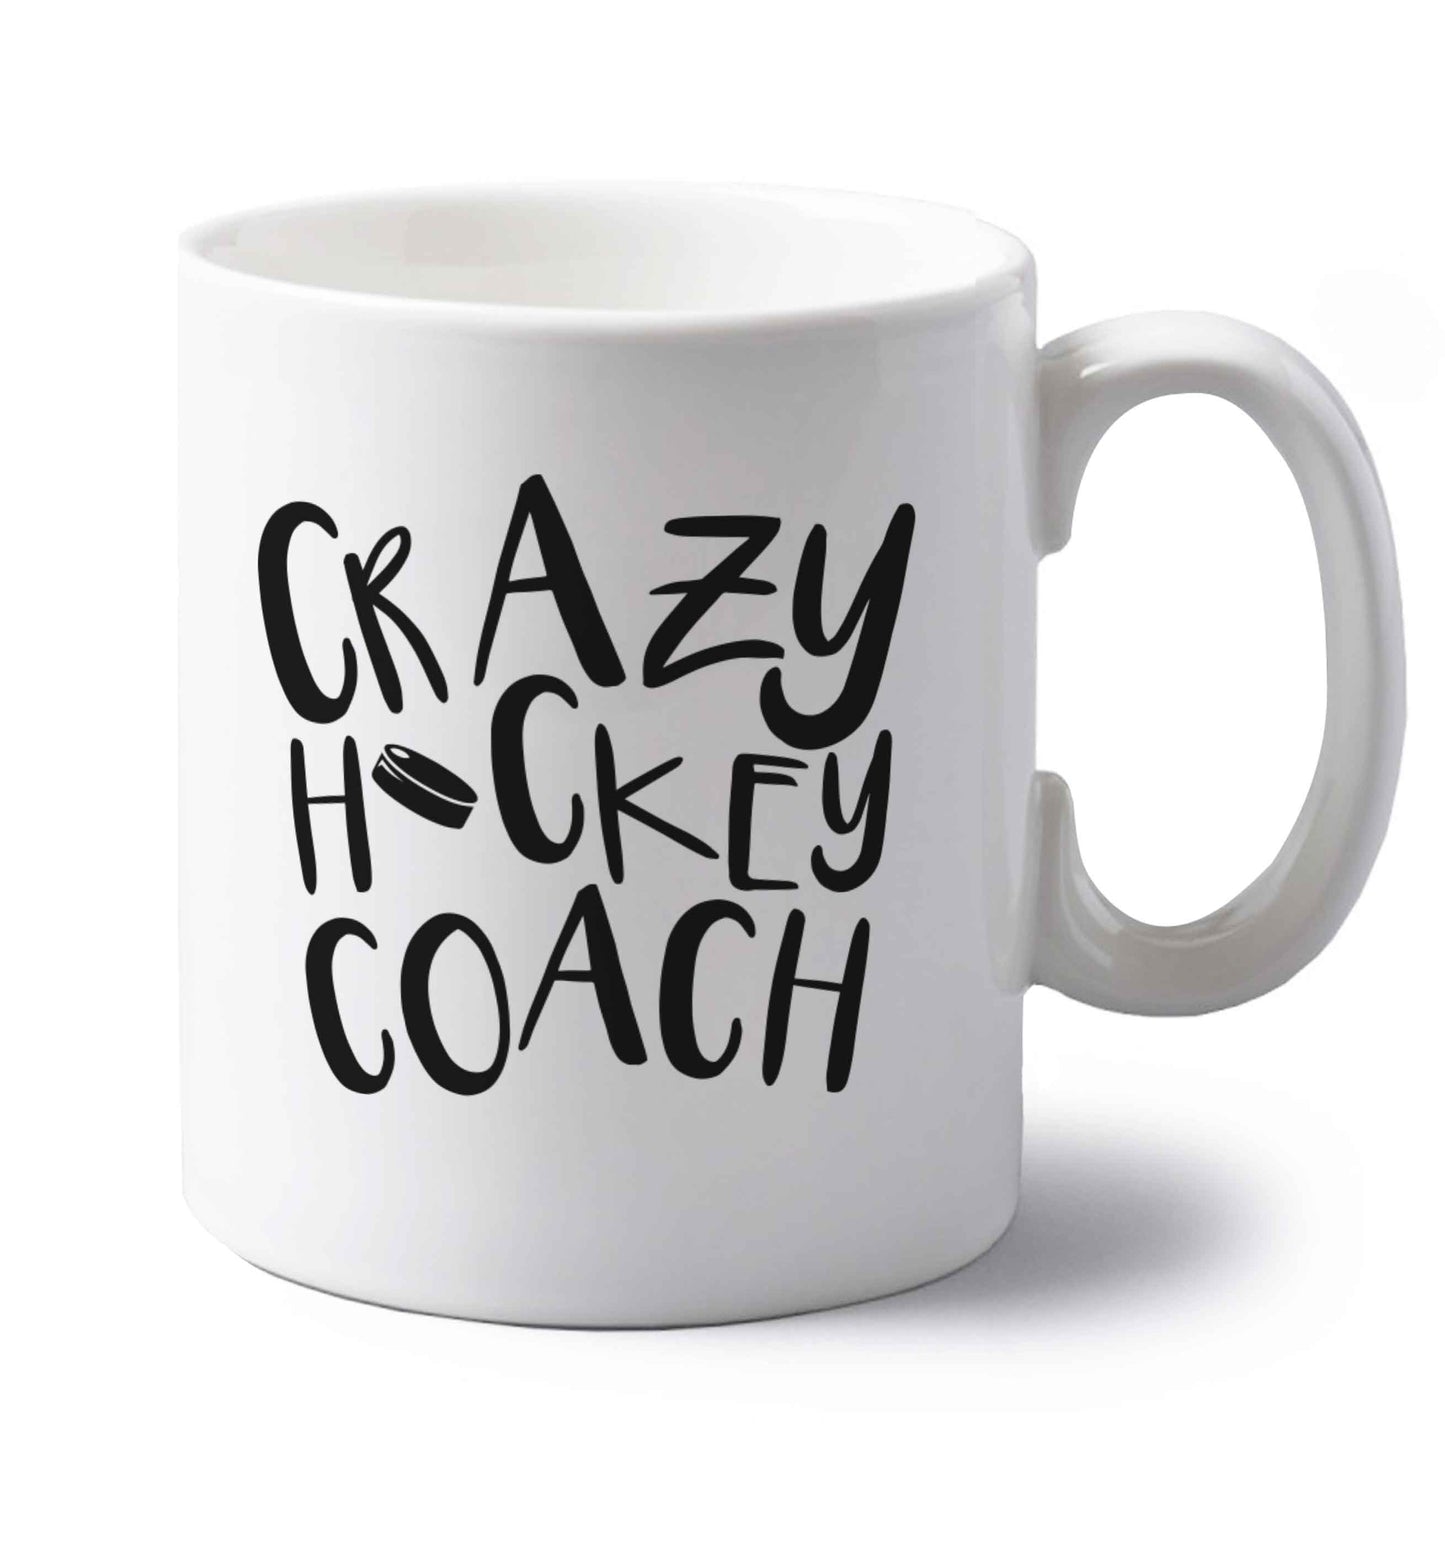 Crazy hockey coach left handed white ceramic mug 